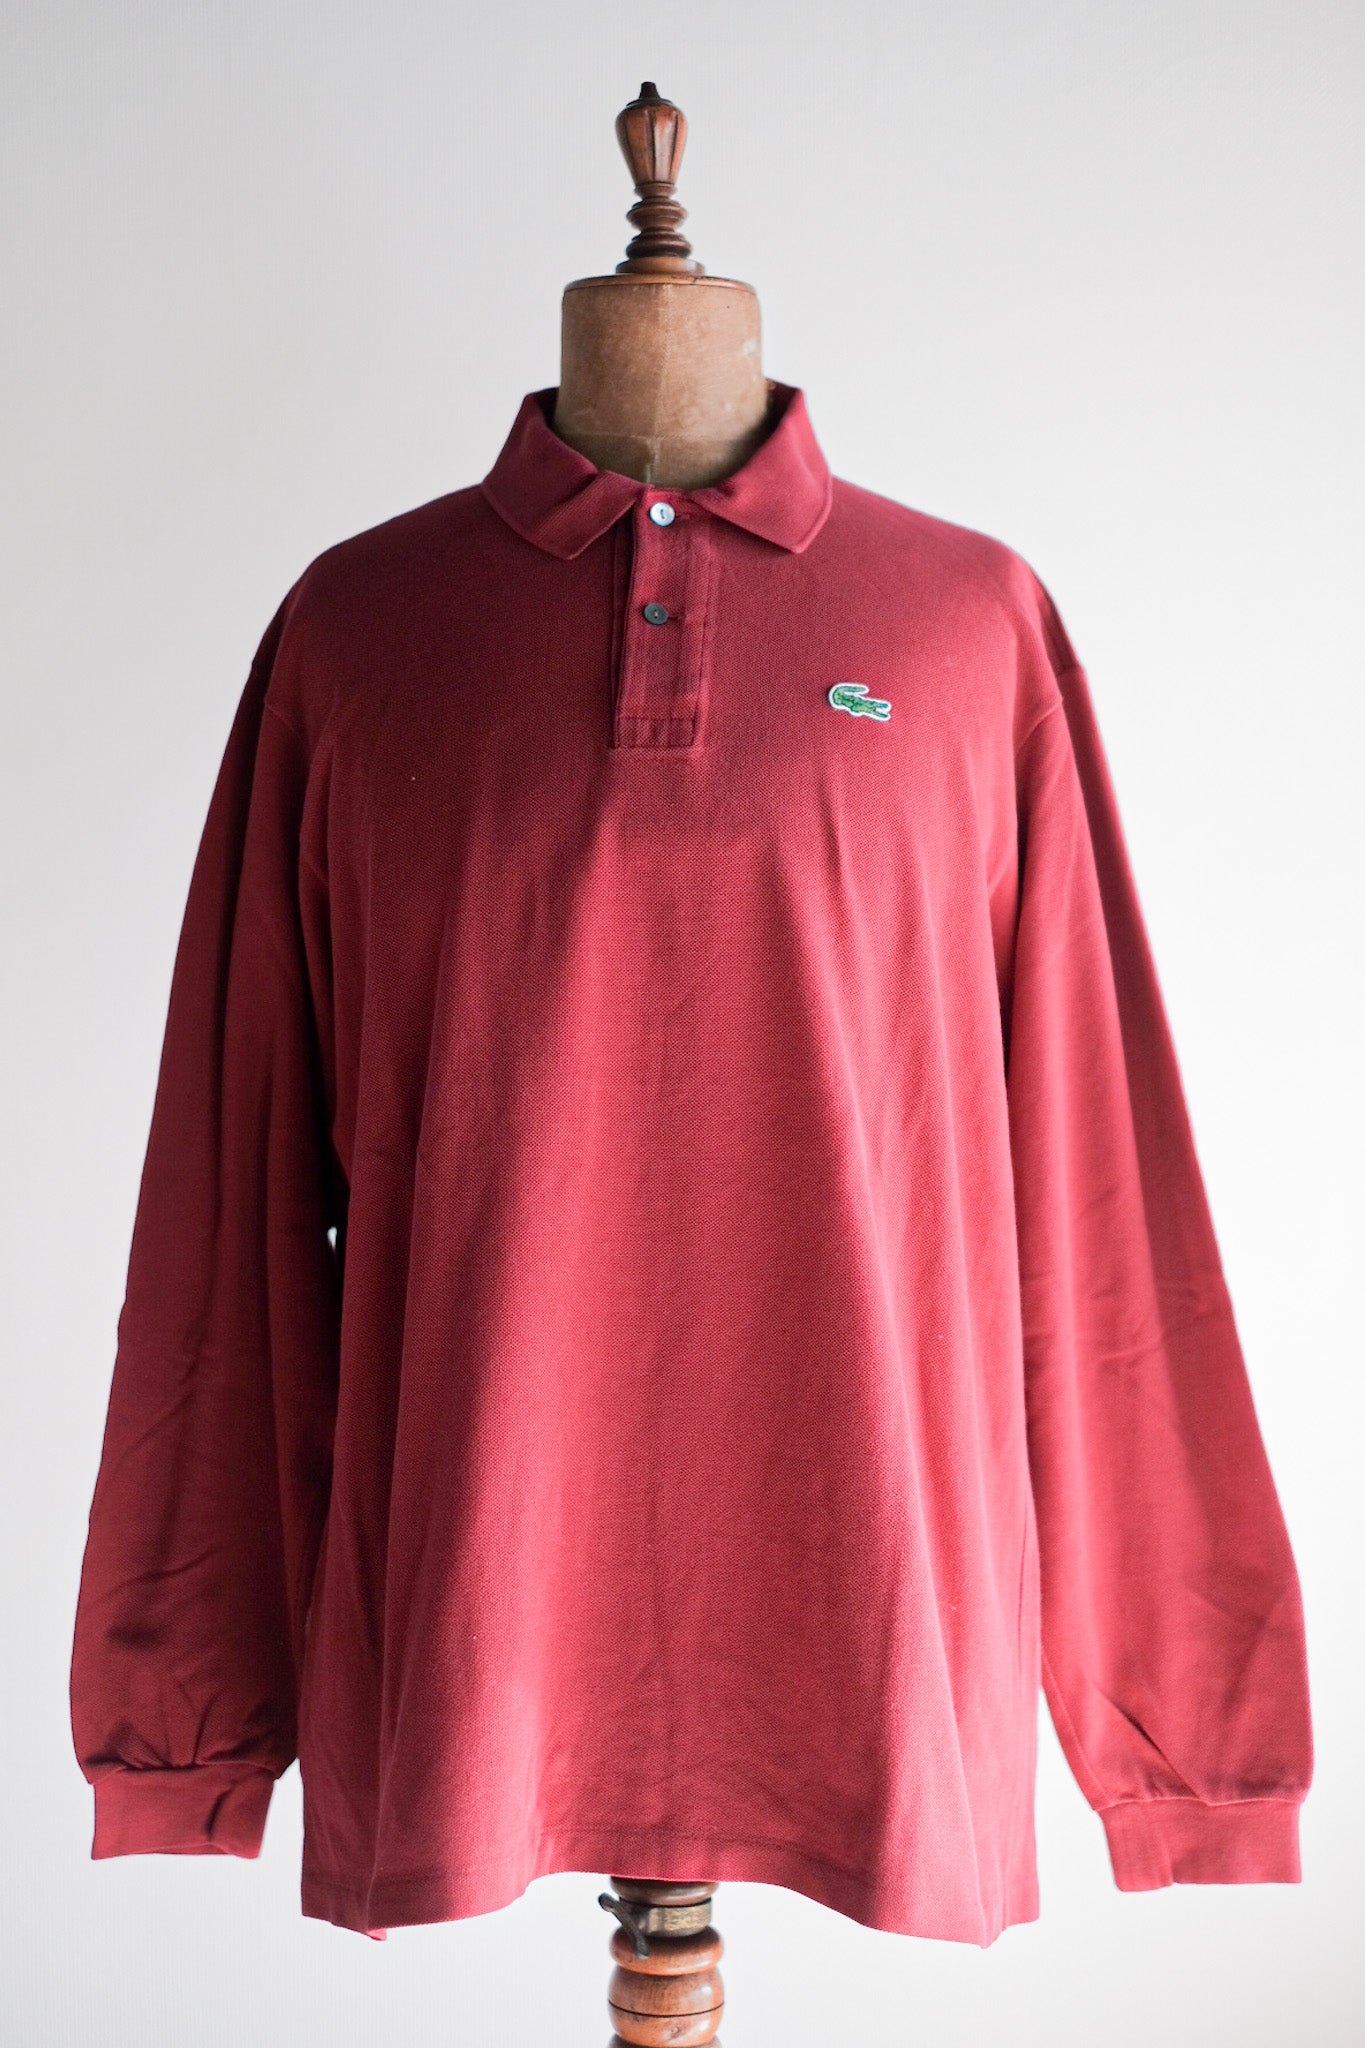 [〜80年代]顏色的lacoste l/s polo襯衫尺寸。6“勃艮第”